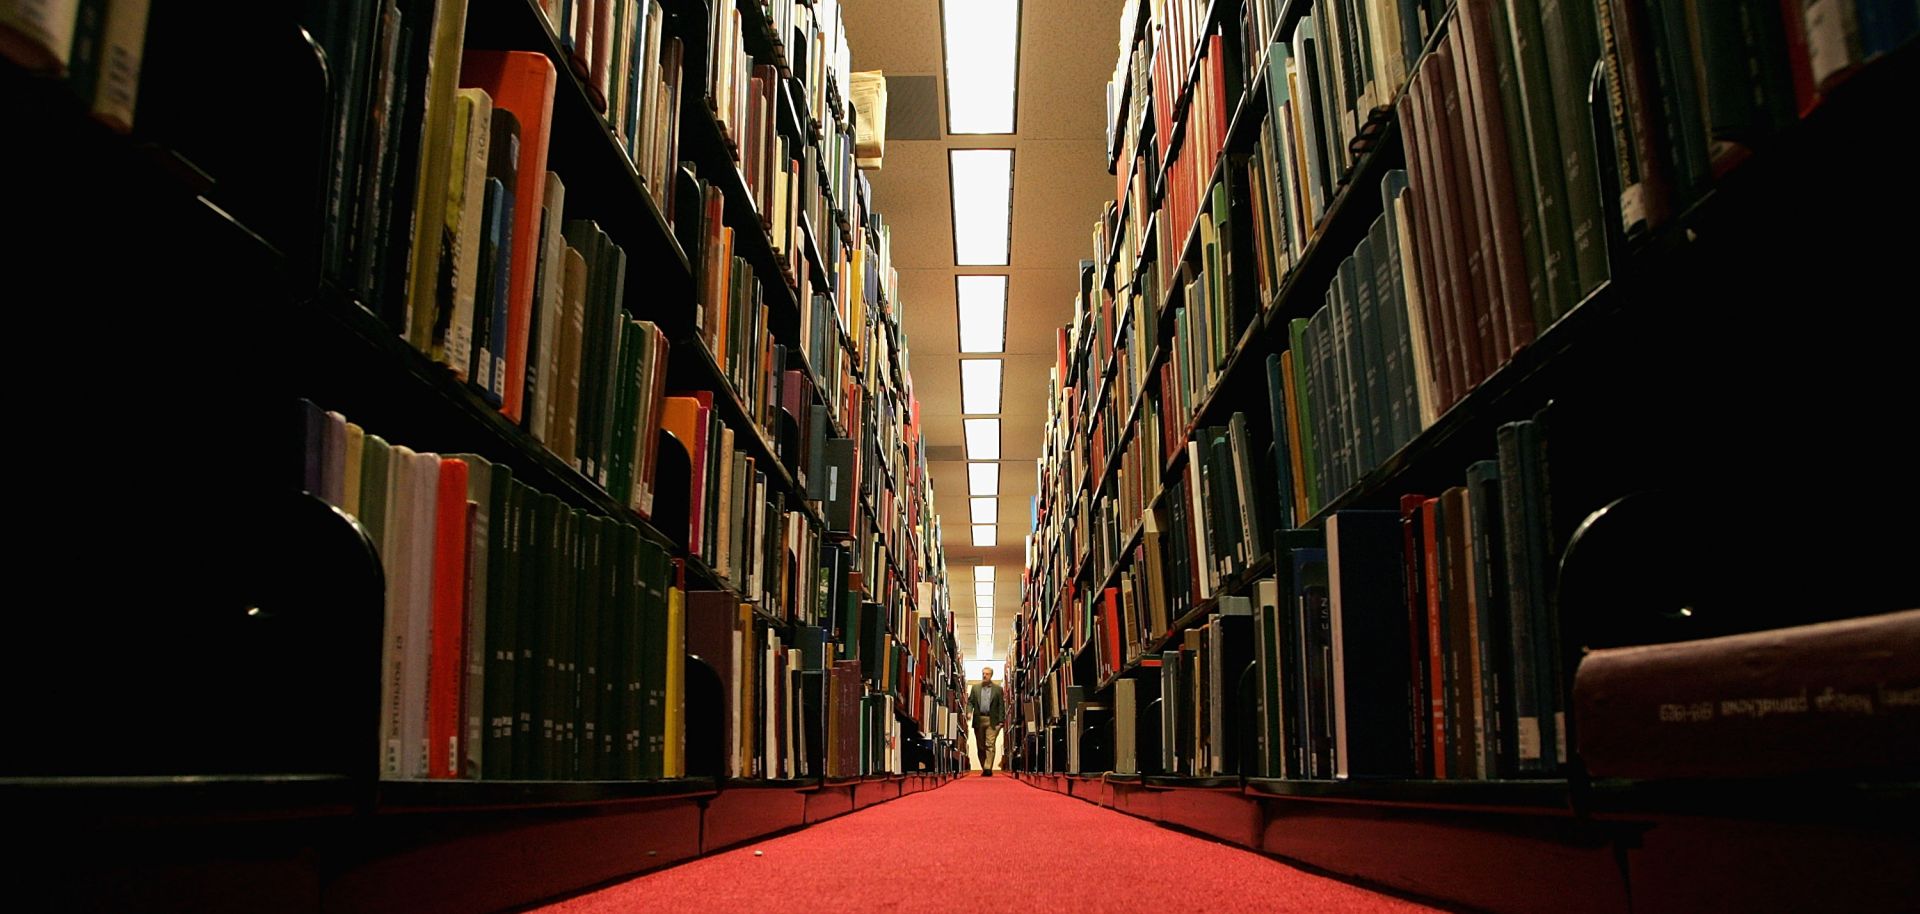 A man walks down a corridor in a library.